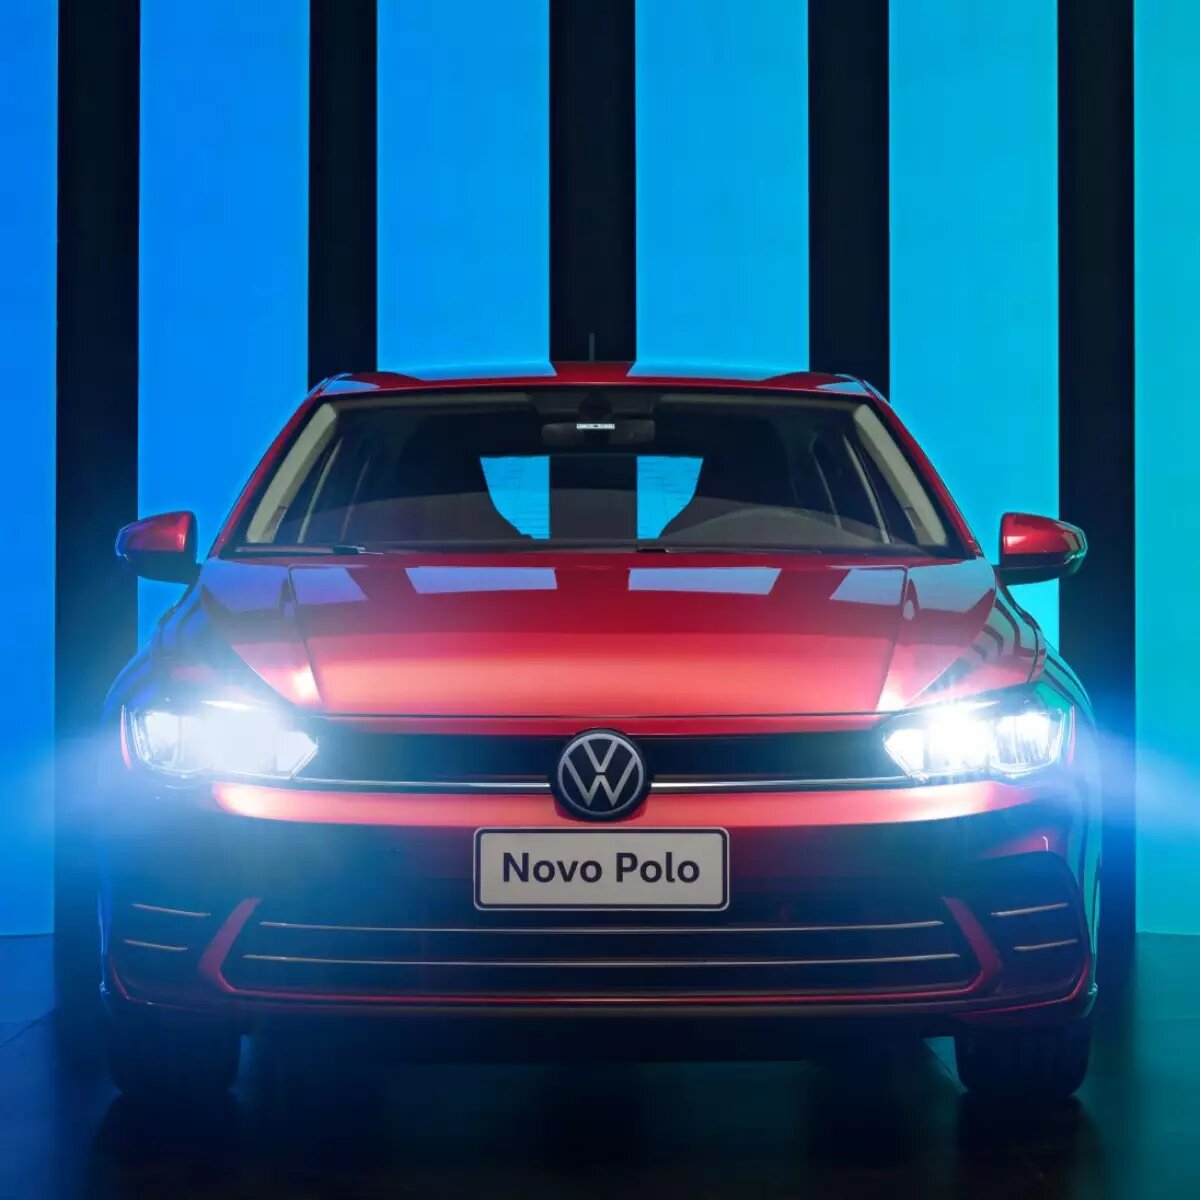 Novo Volkswagen Polo fica mais caro em 2024: Veja novos preços 2024